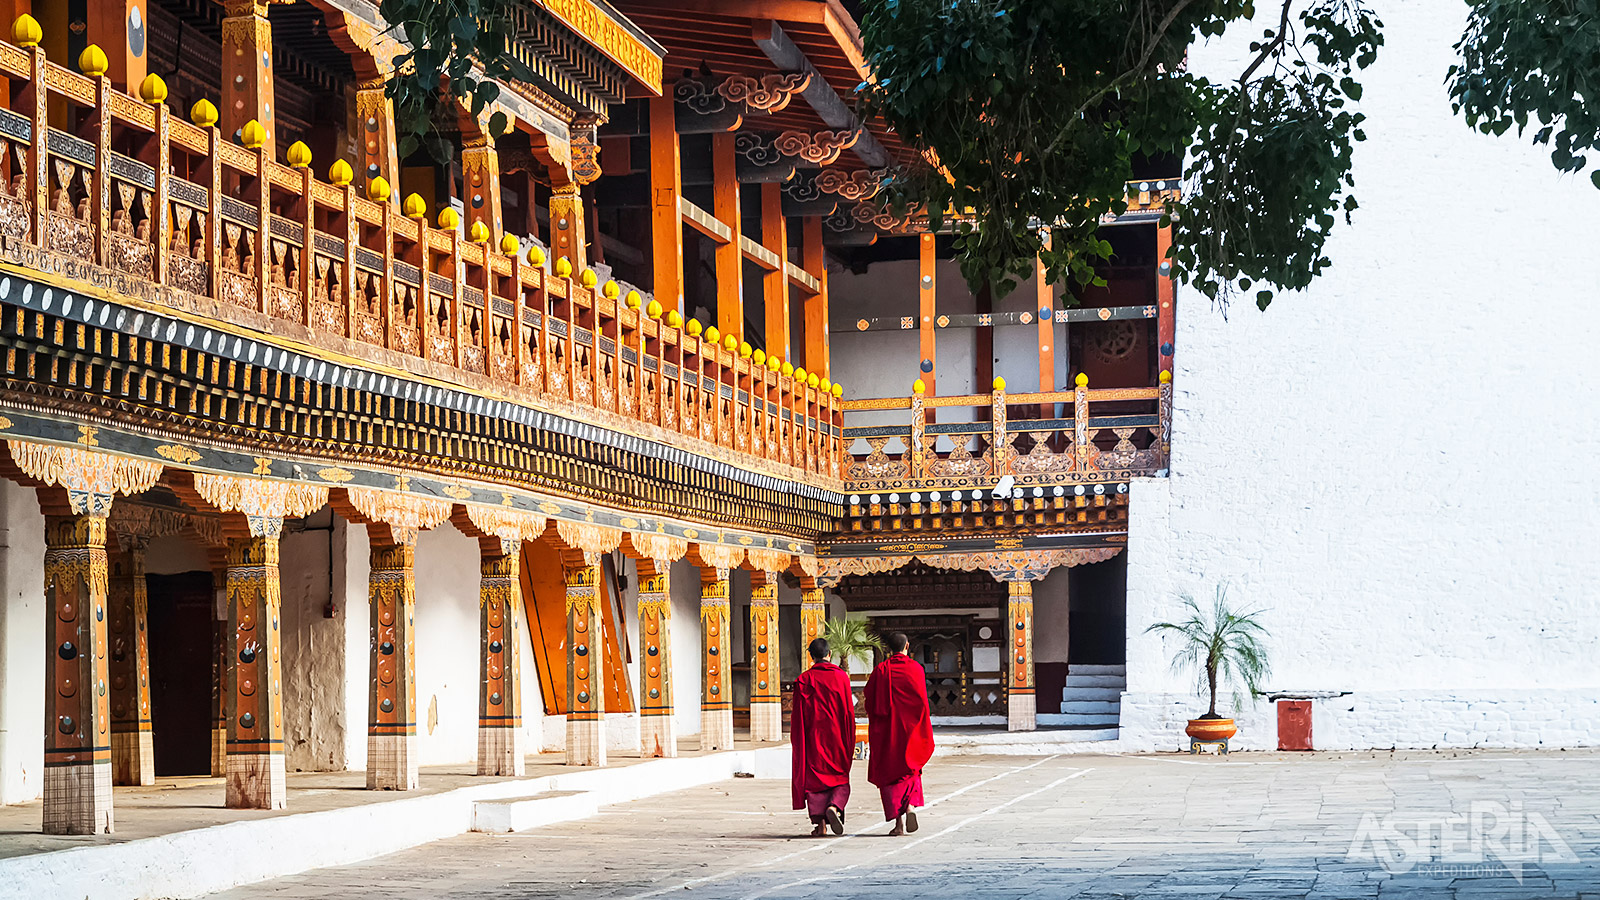 Ontdek de imposante architectuur, de eeuwige glimlach en de ingetogenheid van de monniken in de Punakha Dzong